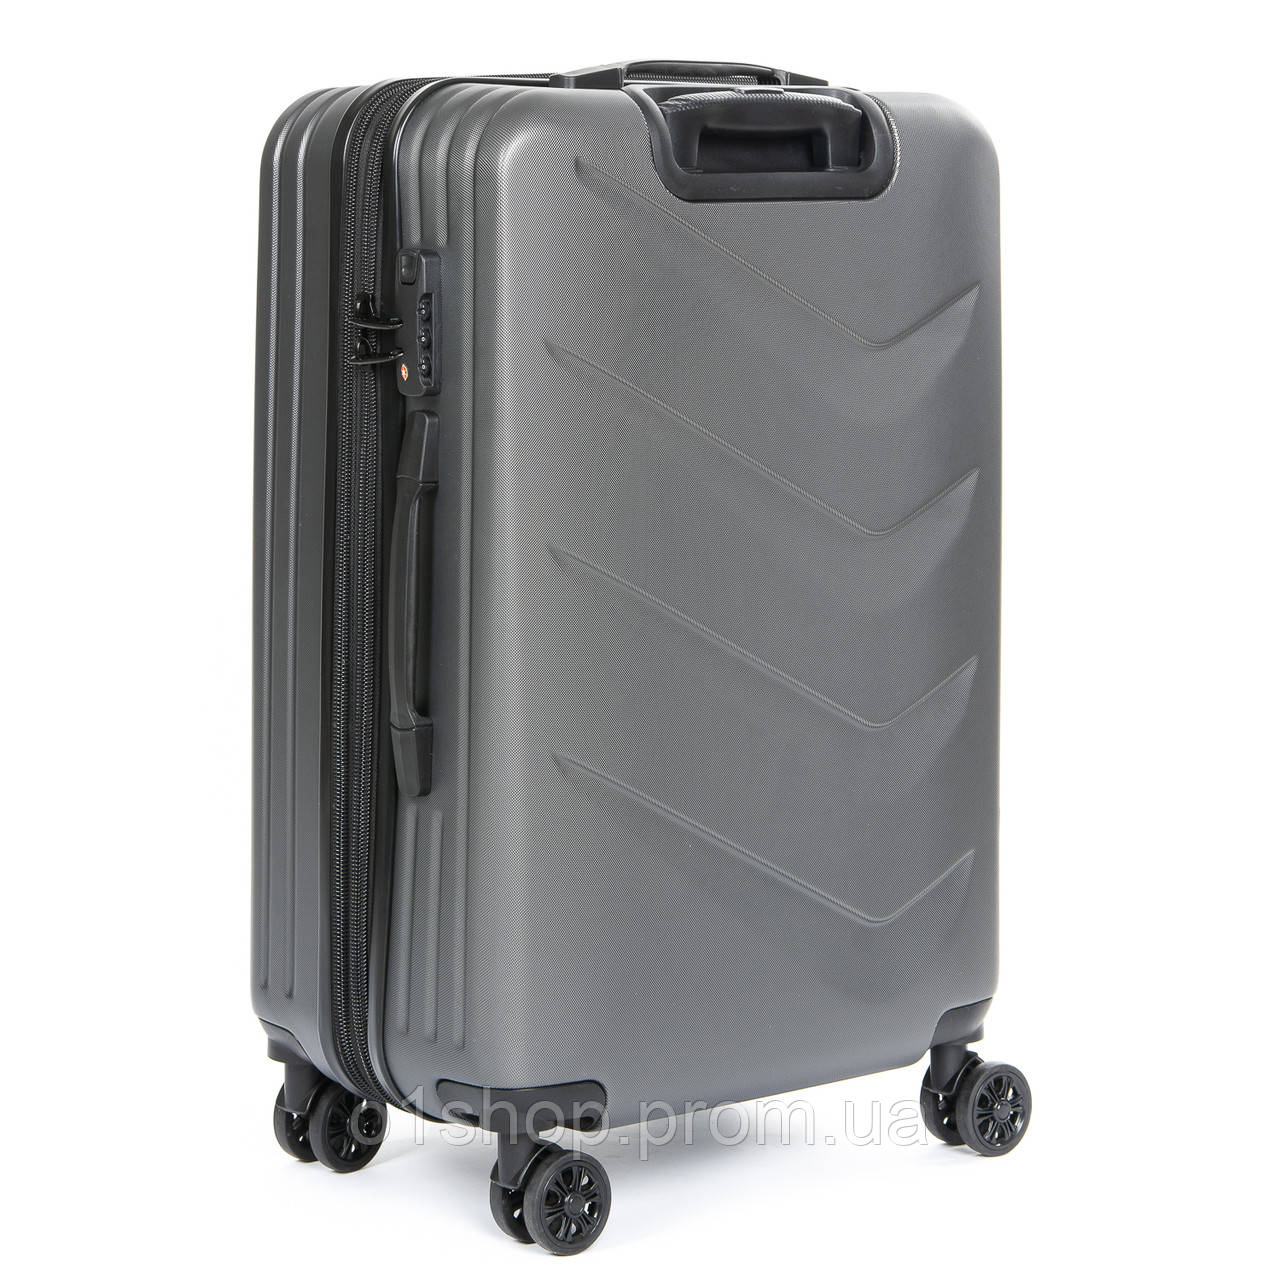 

Качественный красивый модный пластиковый серый маленький дорожный чемодан ABS-пластик 8340 grey